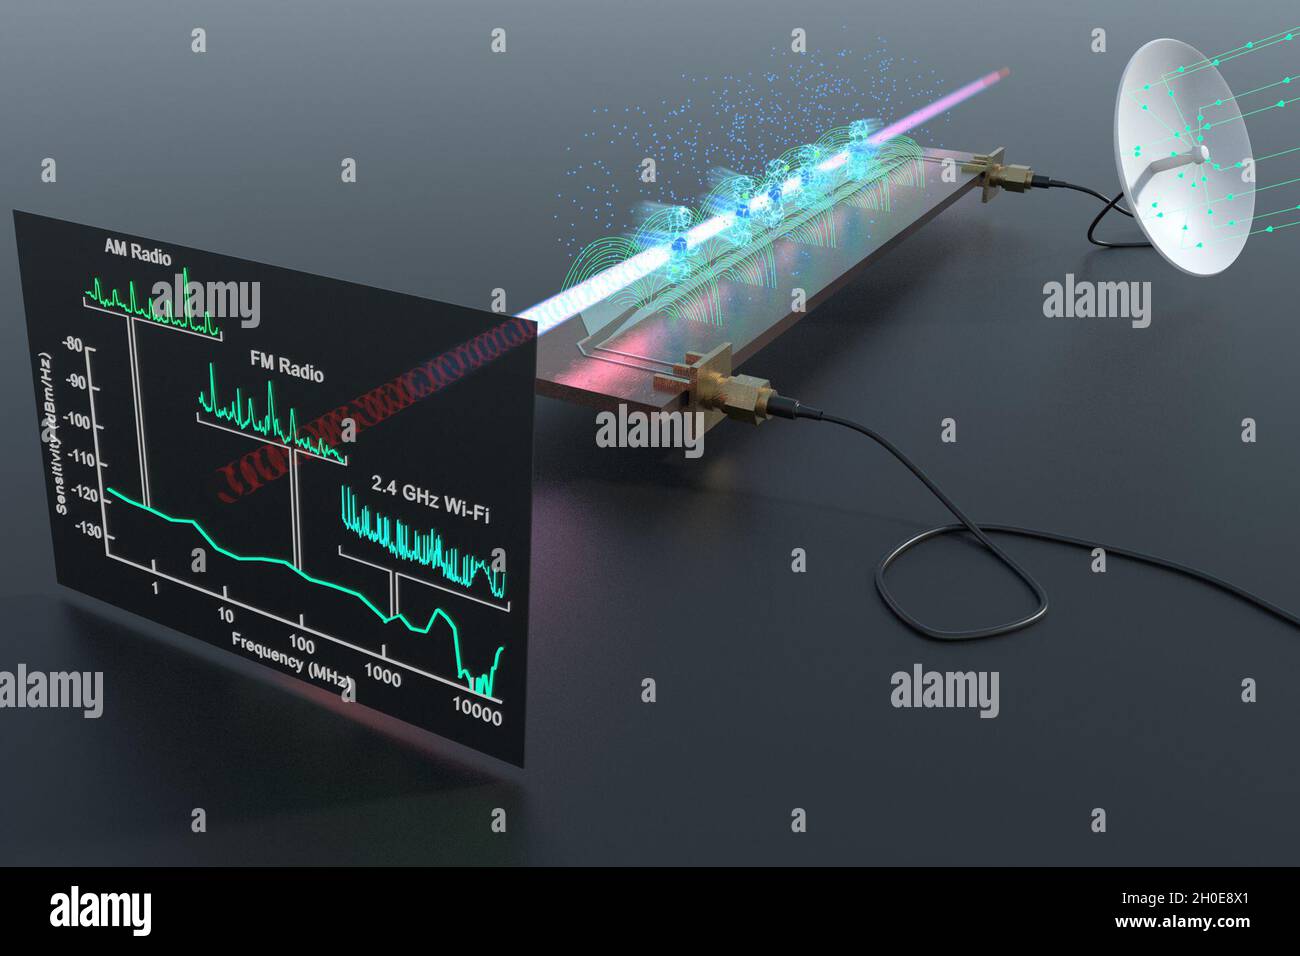 Un ricevitore Rydberg e un analizzatore di spettro rilevano un'ampia gamma di segnali di radiofrequenza reali al di sopra di un circuito a microonde, tra cui radio AM, radio FM, Wi-Fi e Bluetooth. Foto Stock